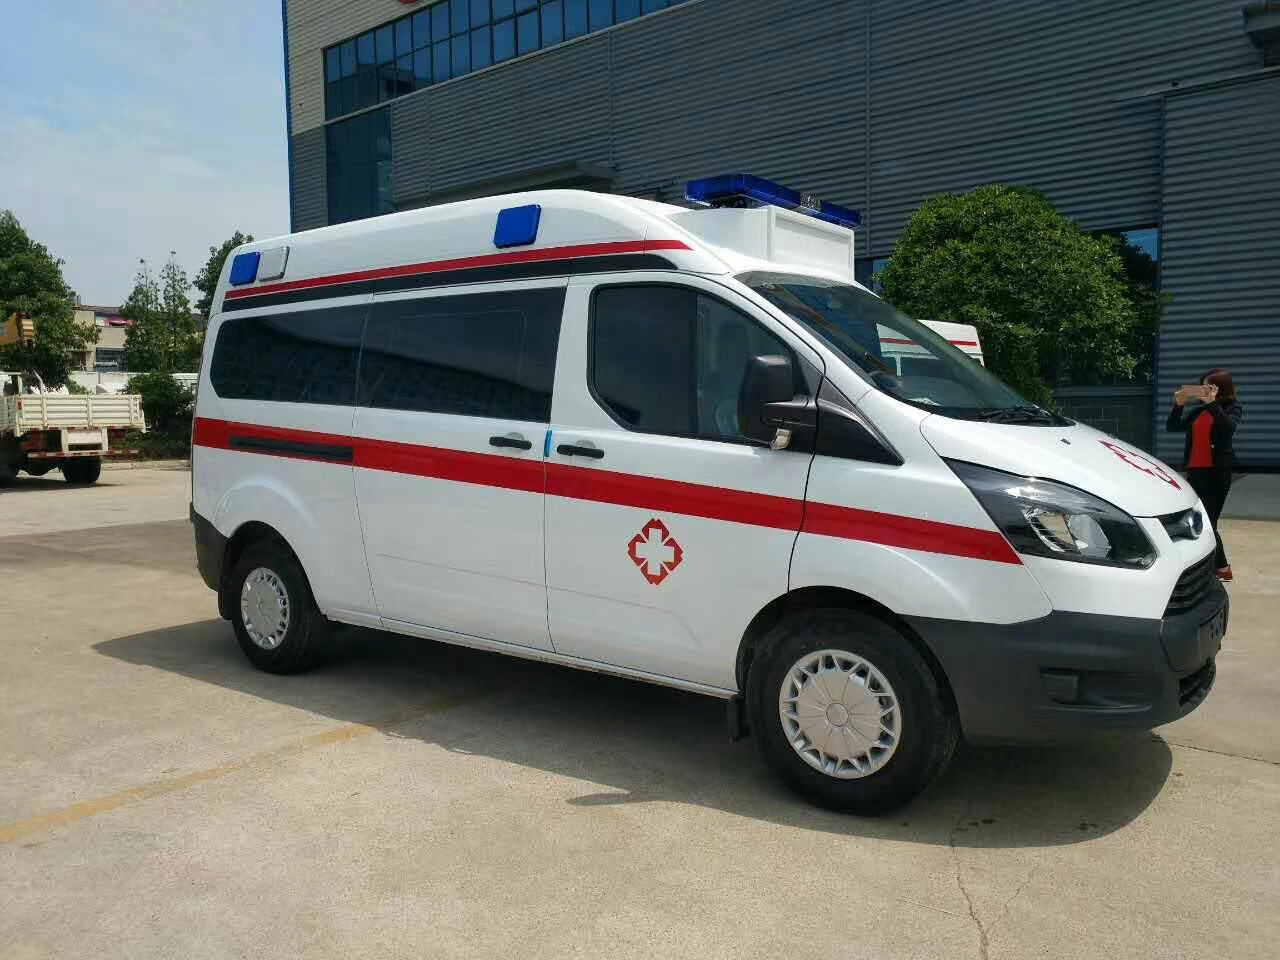 长宁县出院转院救护车